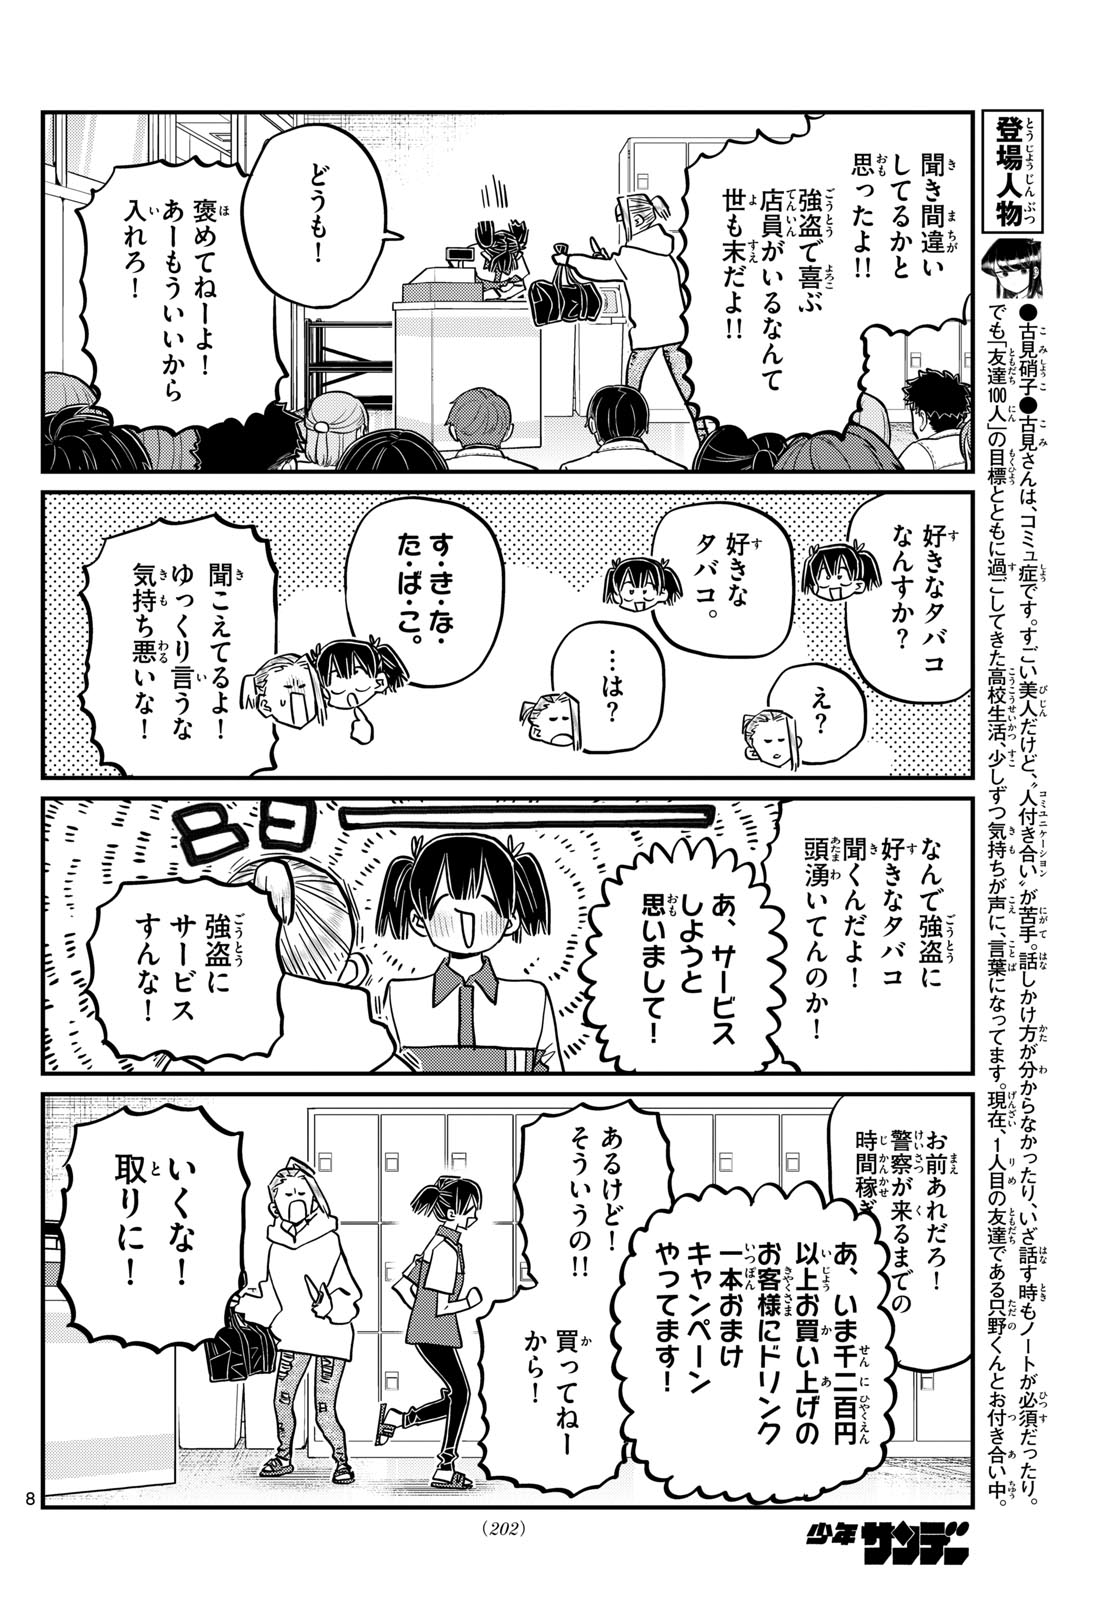 Komi-san wa Komyushou Desu - Chapter 460 - Page 8